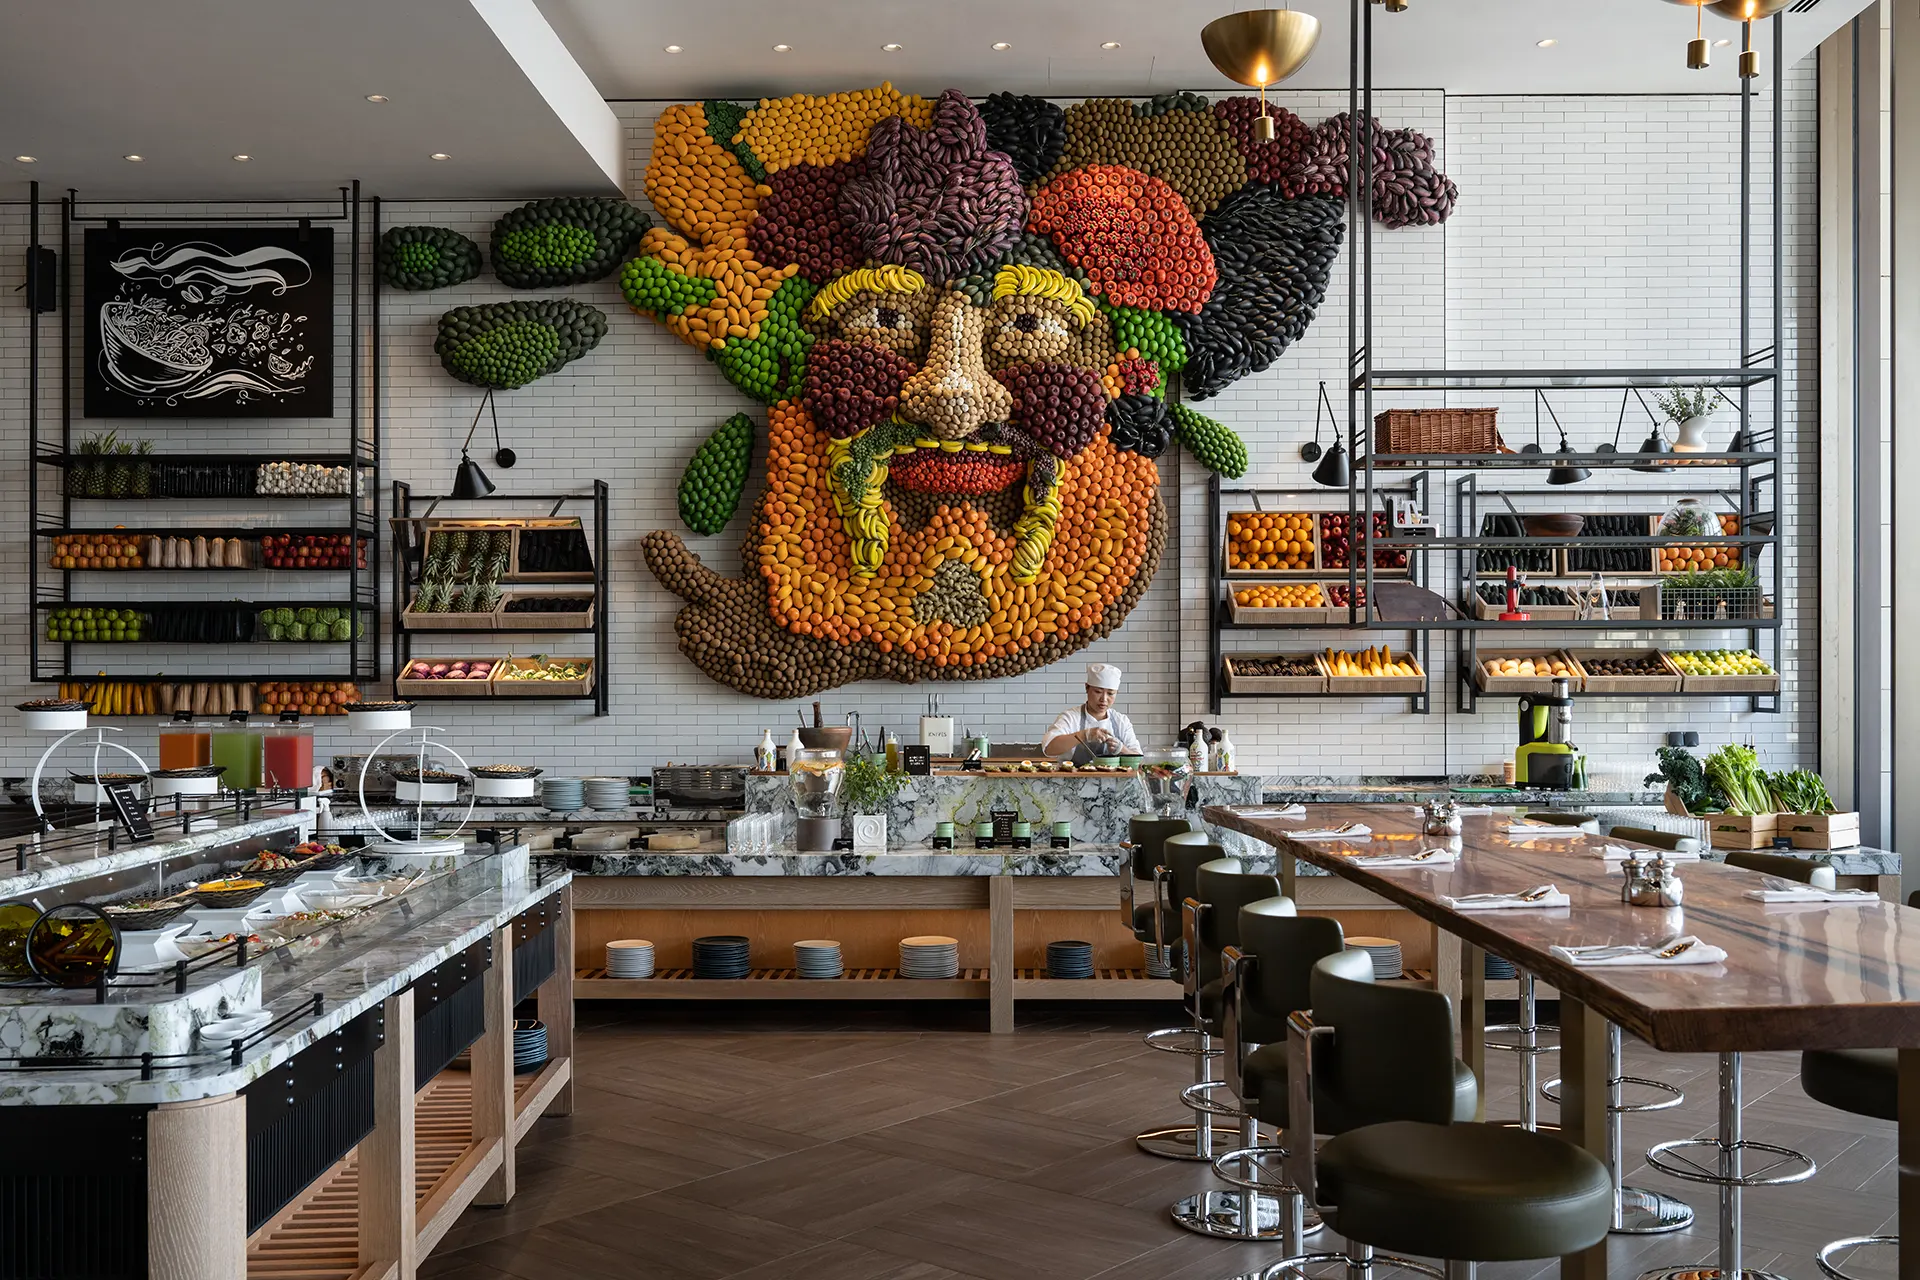 Buffetraum mit aufwändigem Wandbild aus Obst